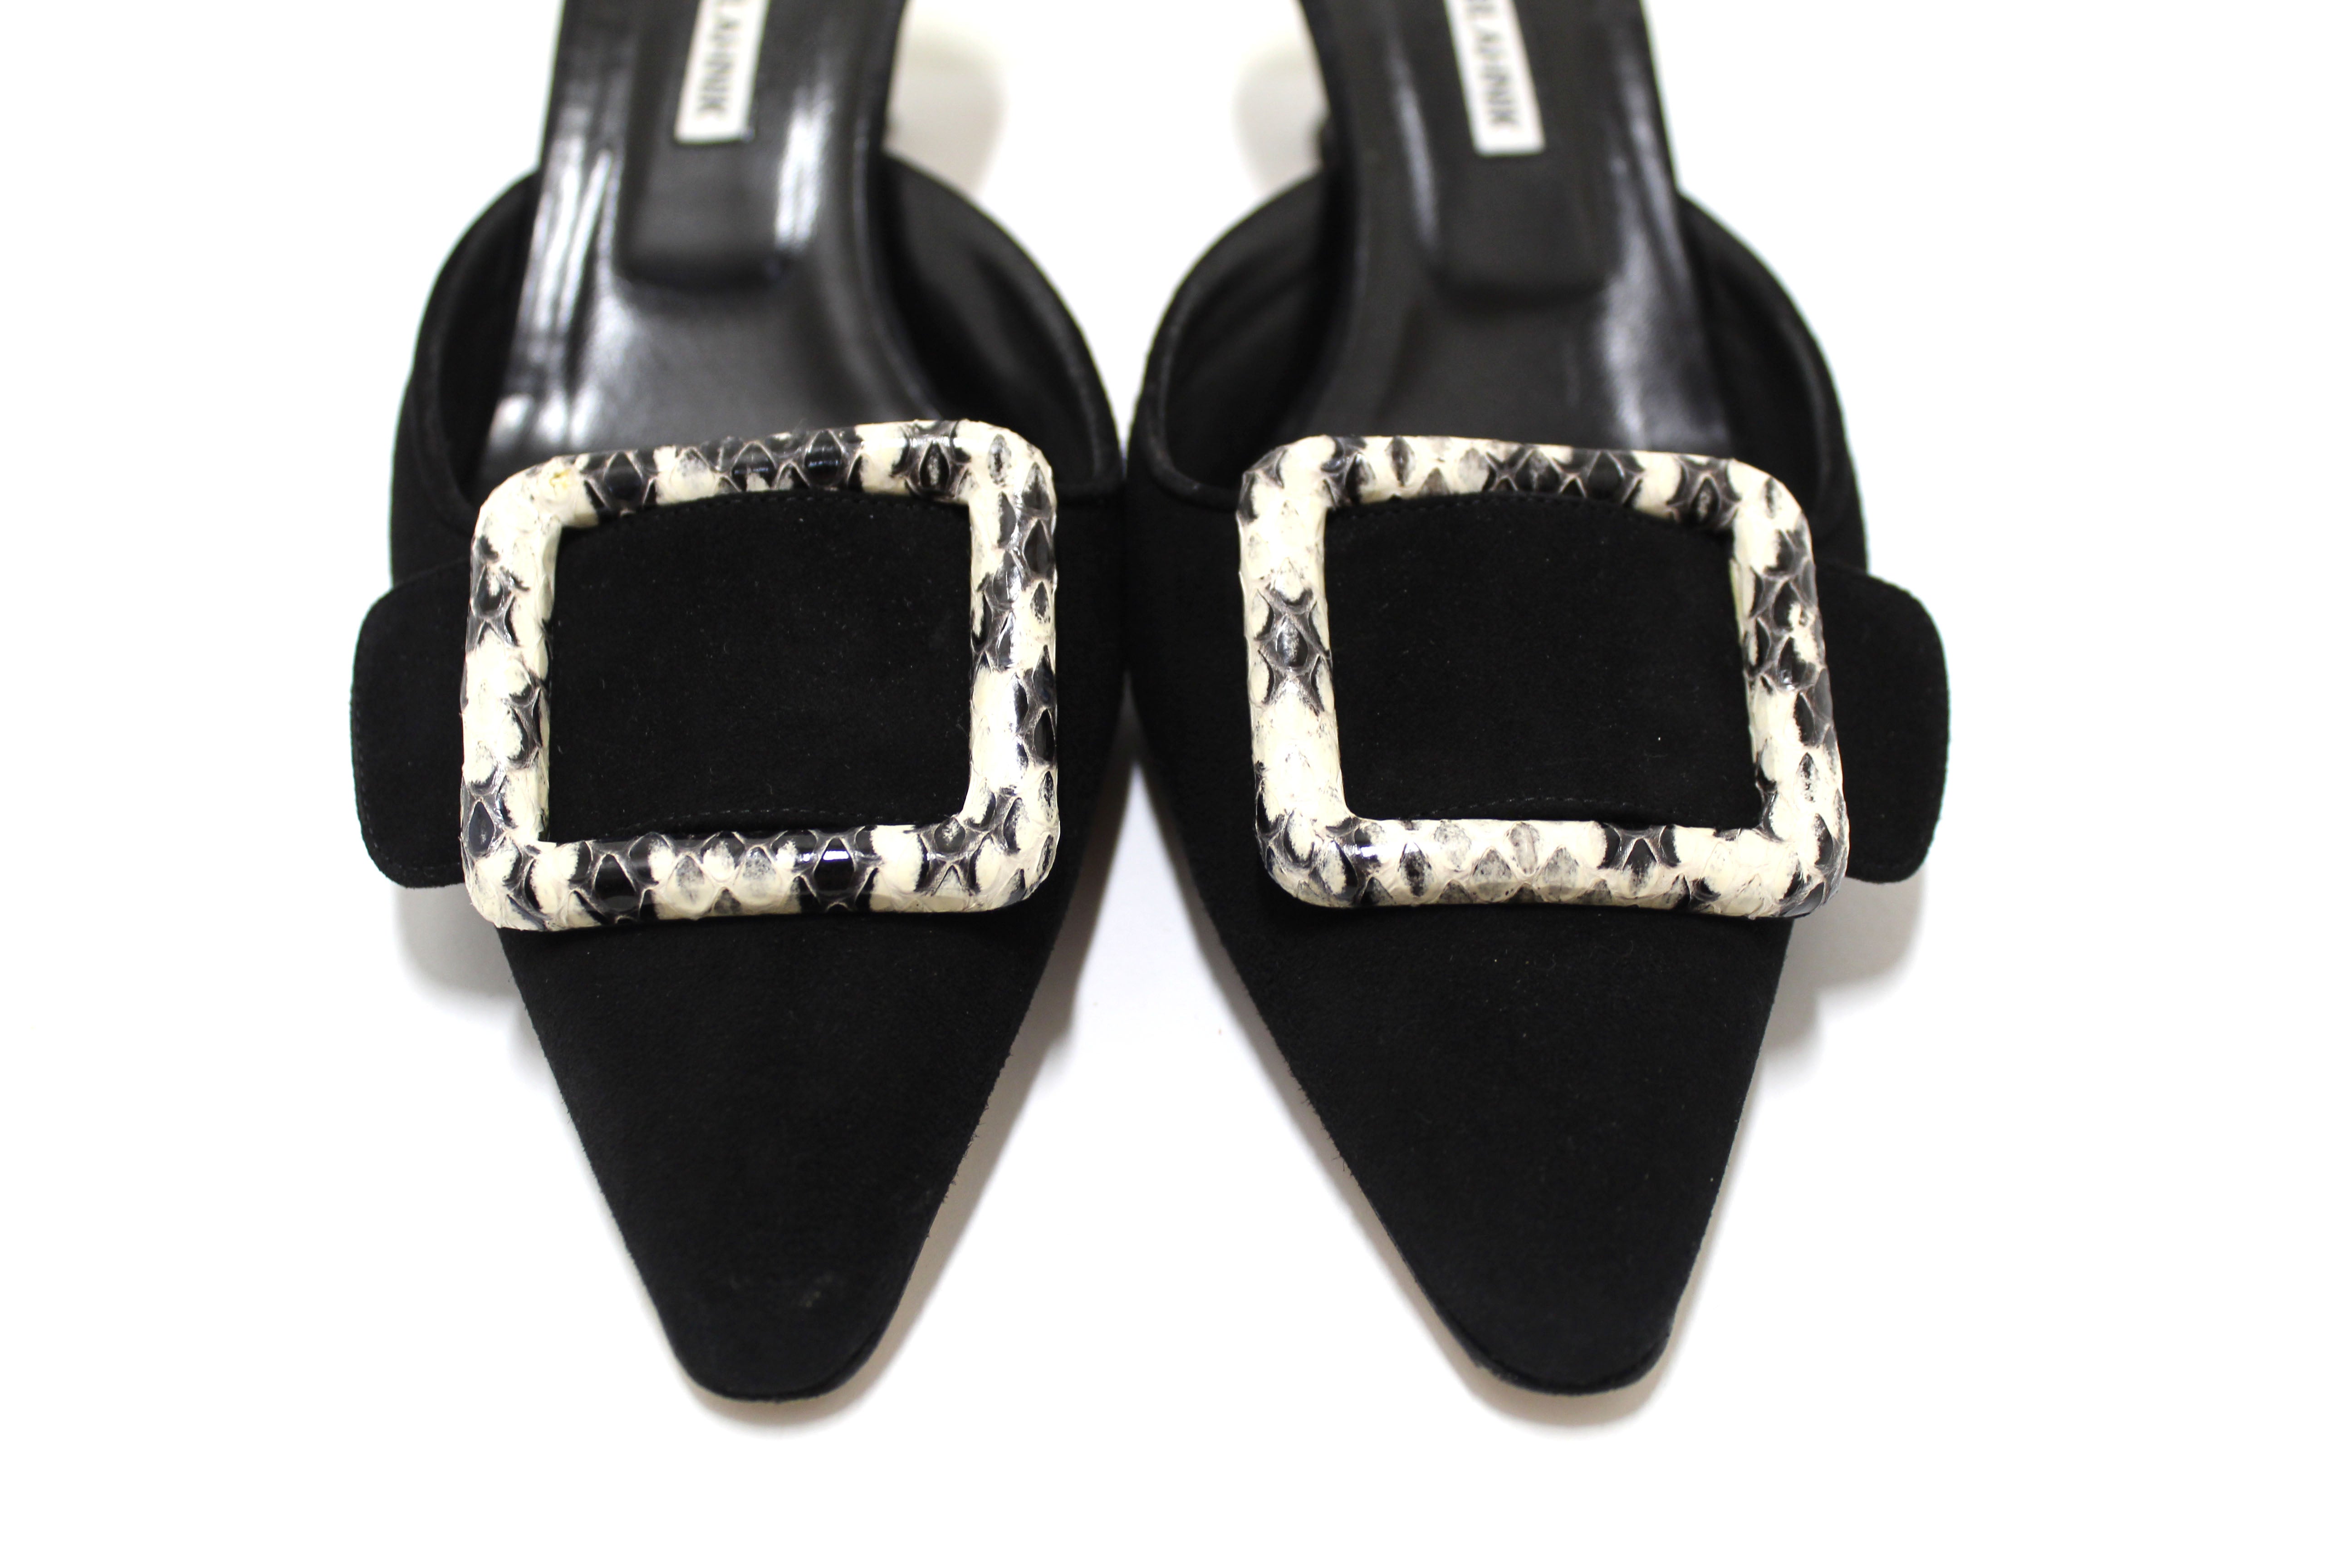 Authentic Manolo Blahnik Maysale Black Suede Mules Shoes Size 40